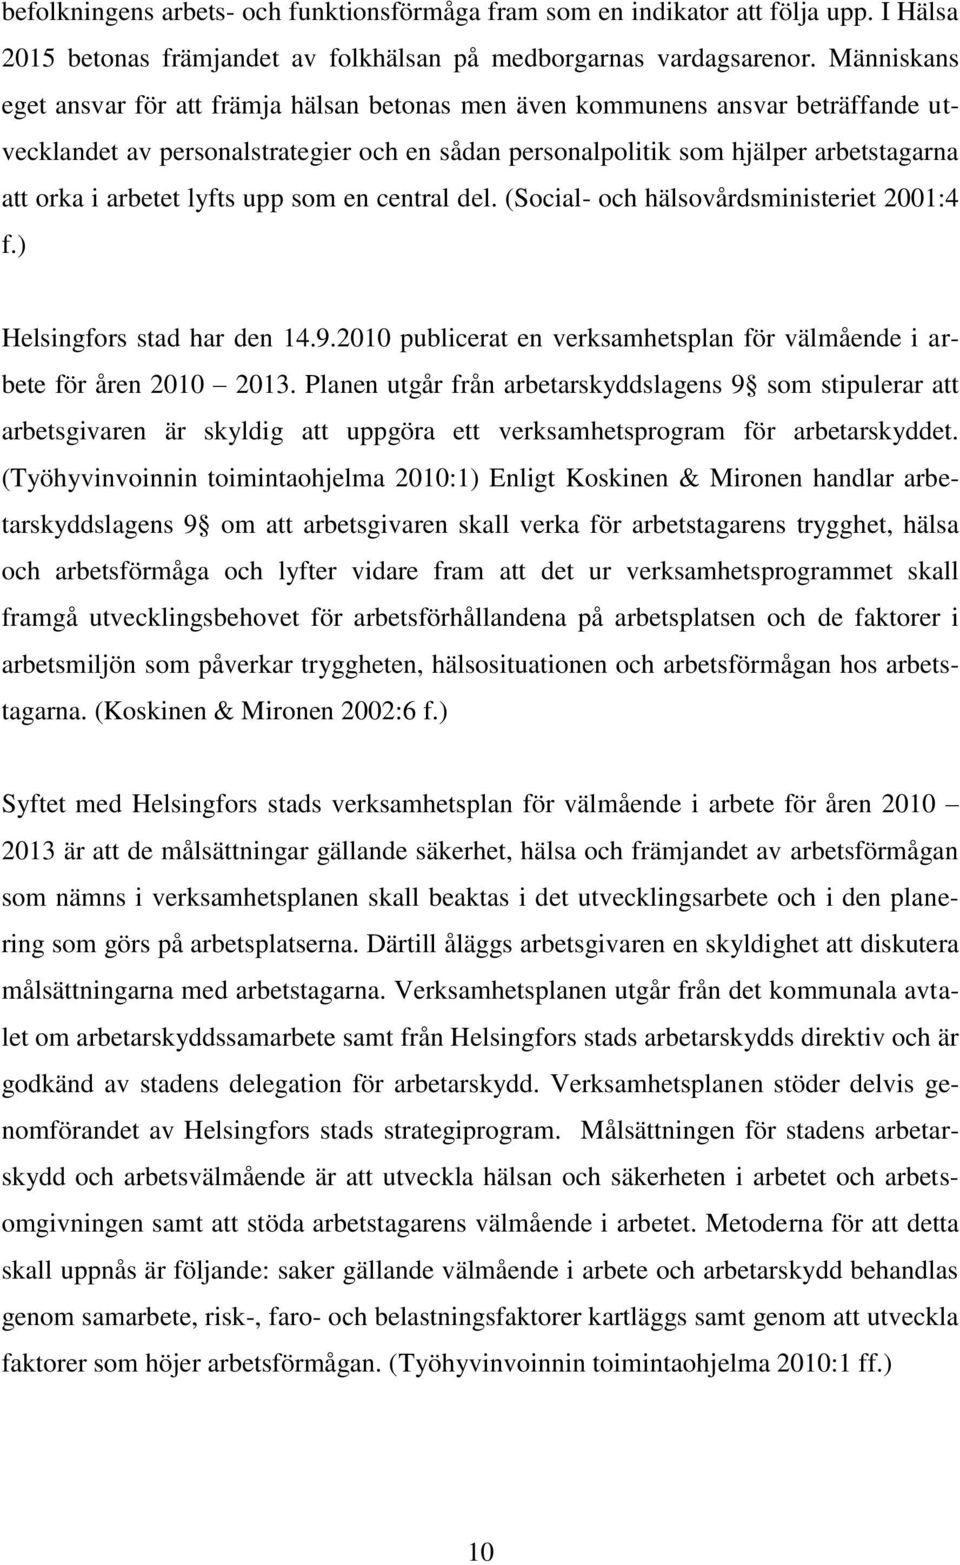 lyfts upp som en central del. (Social- och hälsovårdsministeriet 2001:4 f.) Helsingfors stad har den 14.9.2010 publicerat en verksamhetsplan för välmående i arbete för åren 2010 2013.